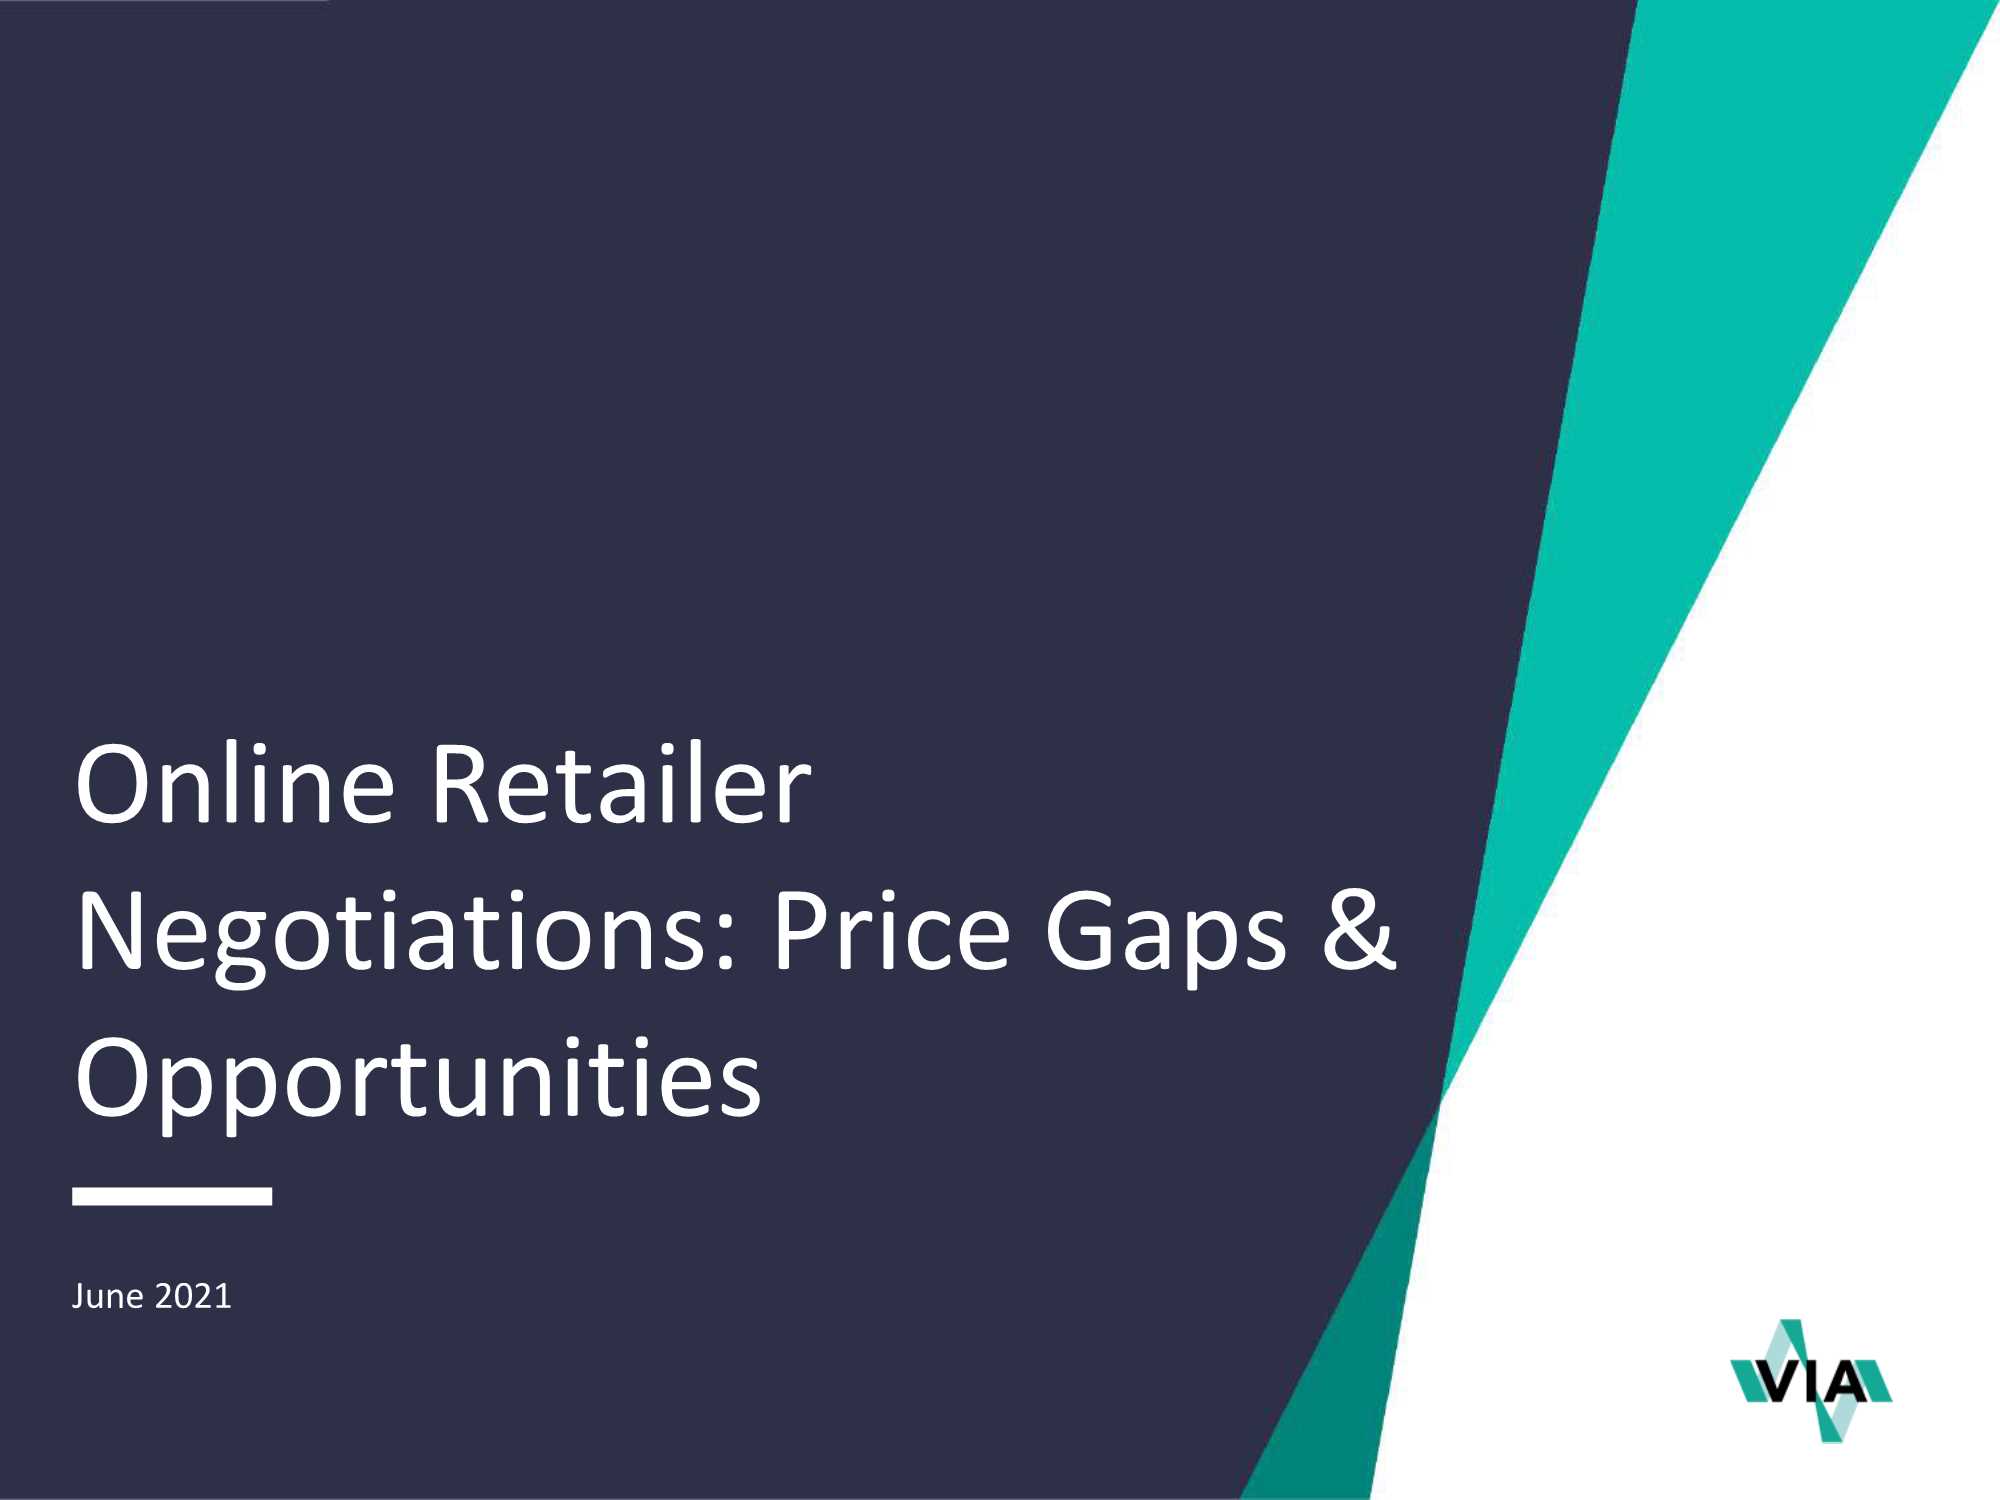 VIA-网上零售商谈判：价格差距与机会（英文）-2021.06-24页